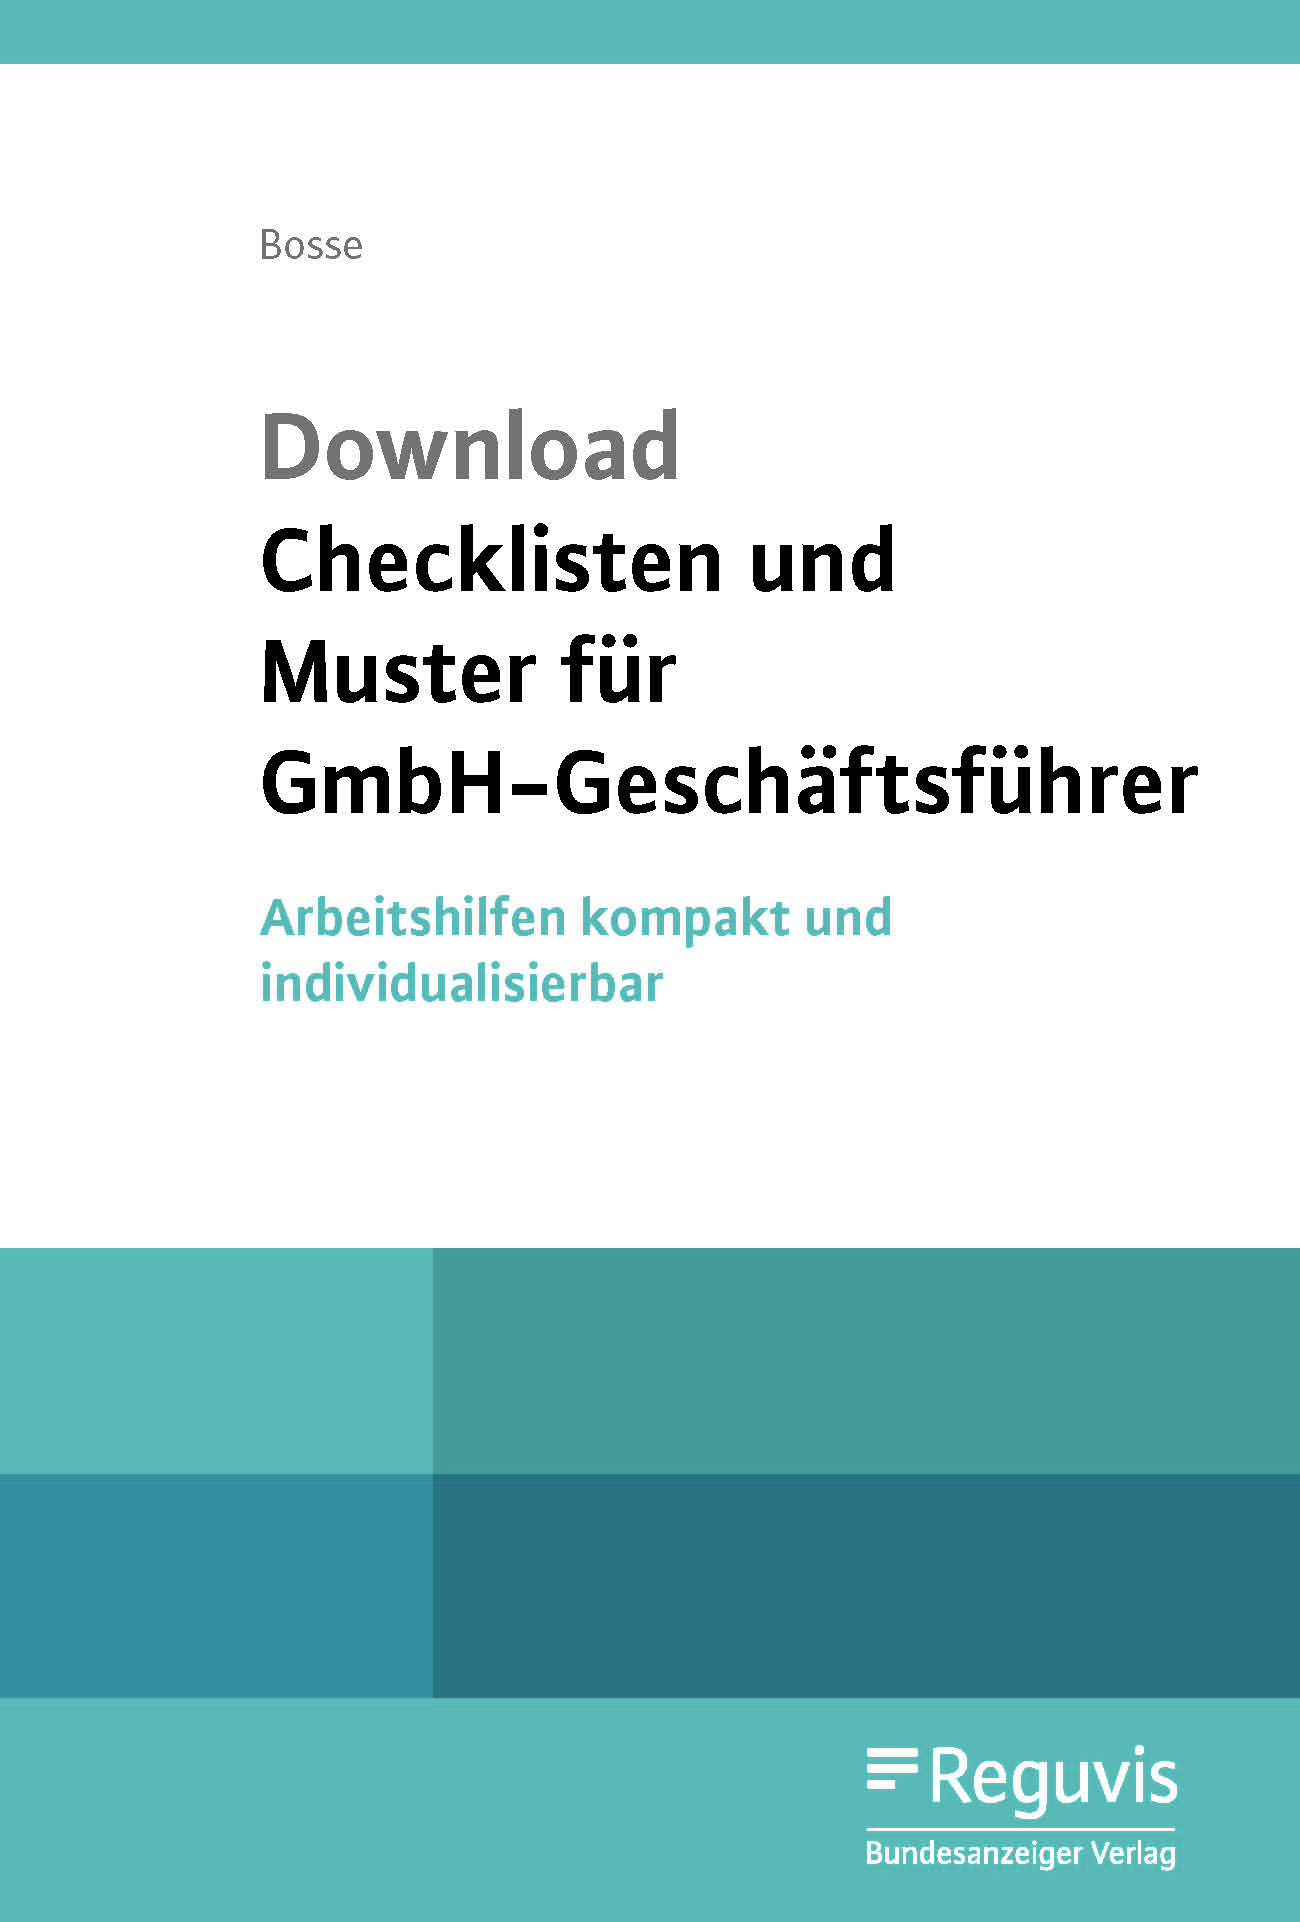 Checklisten und Muster für GmbH-Geschäftsführer - Download